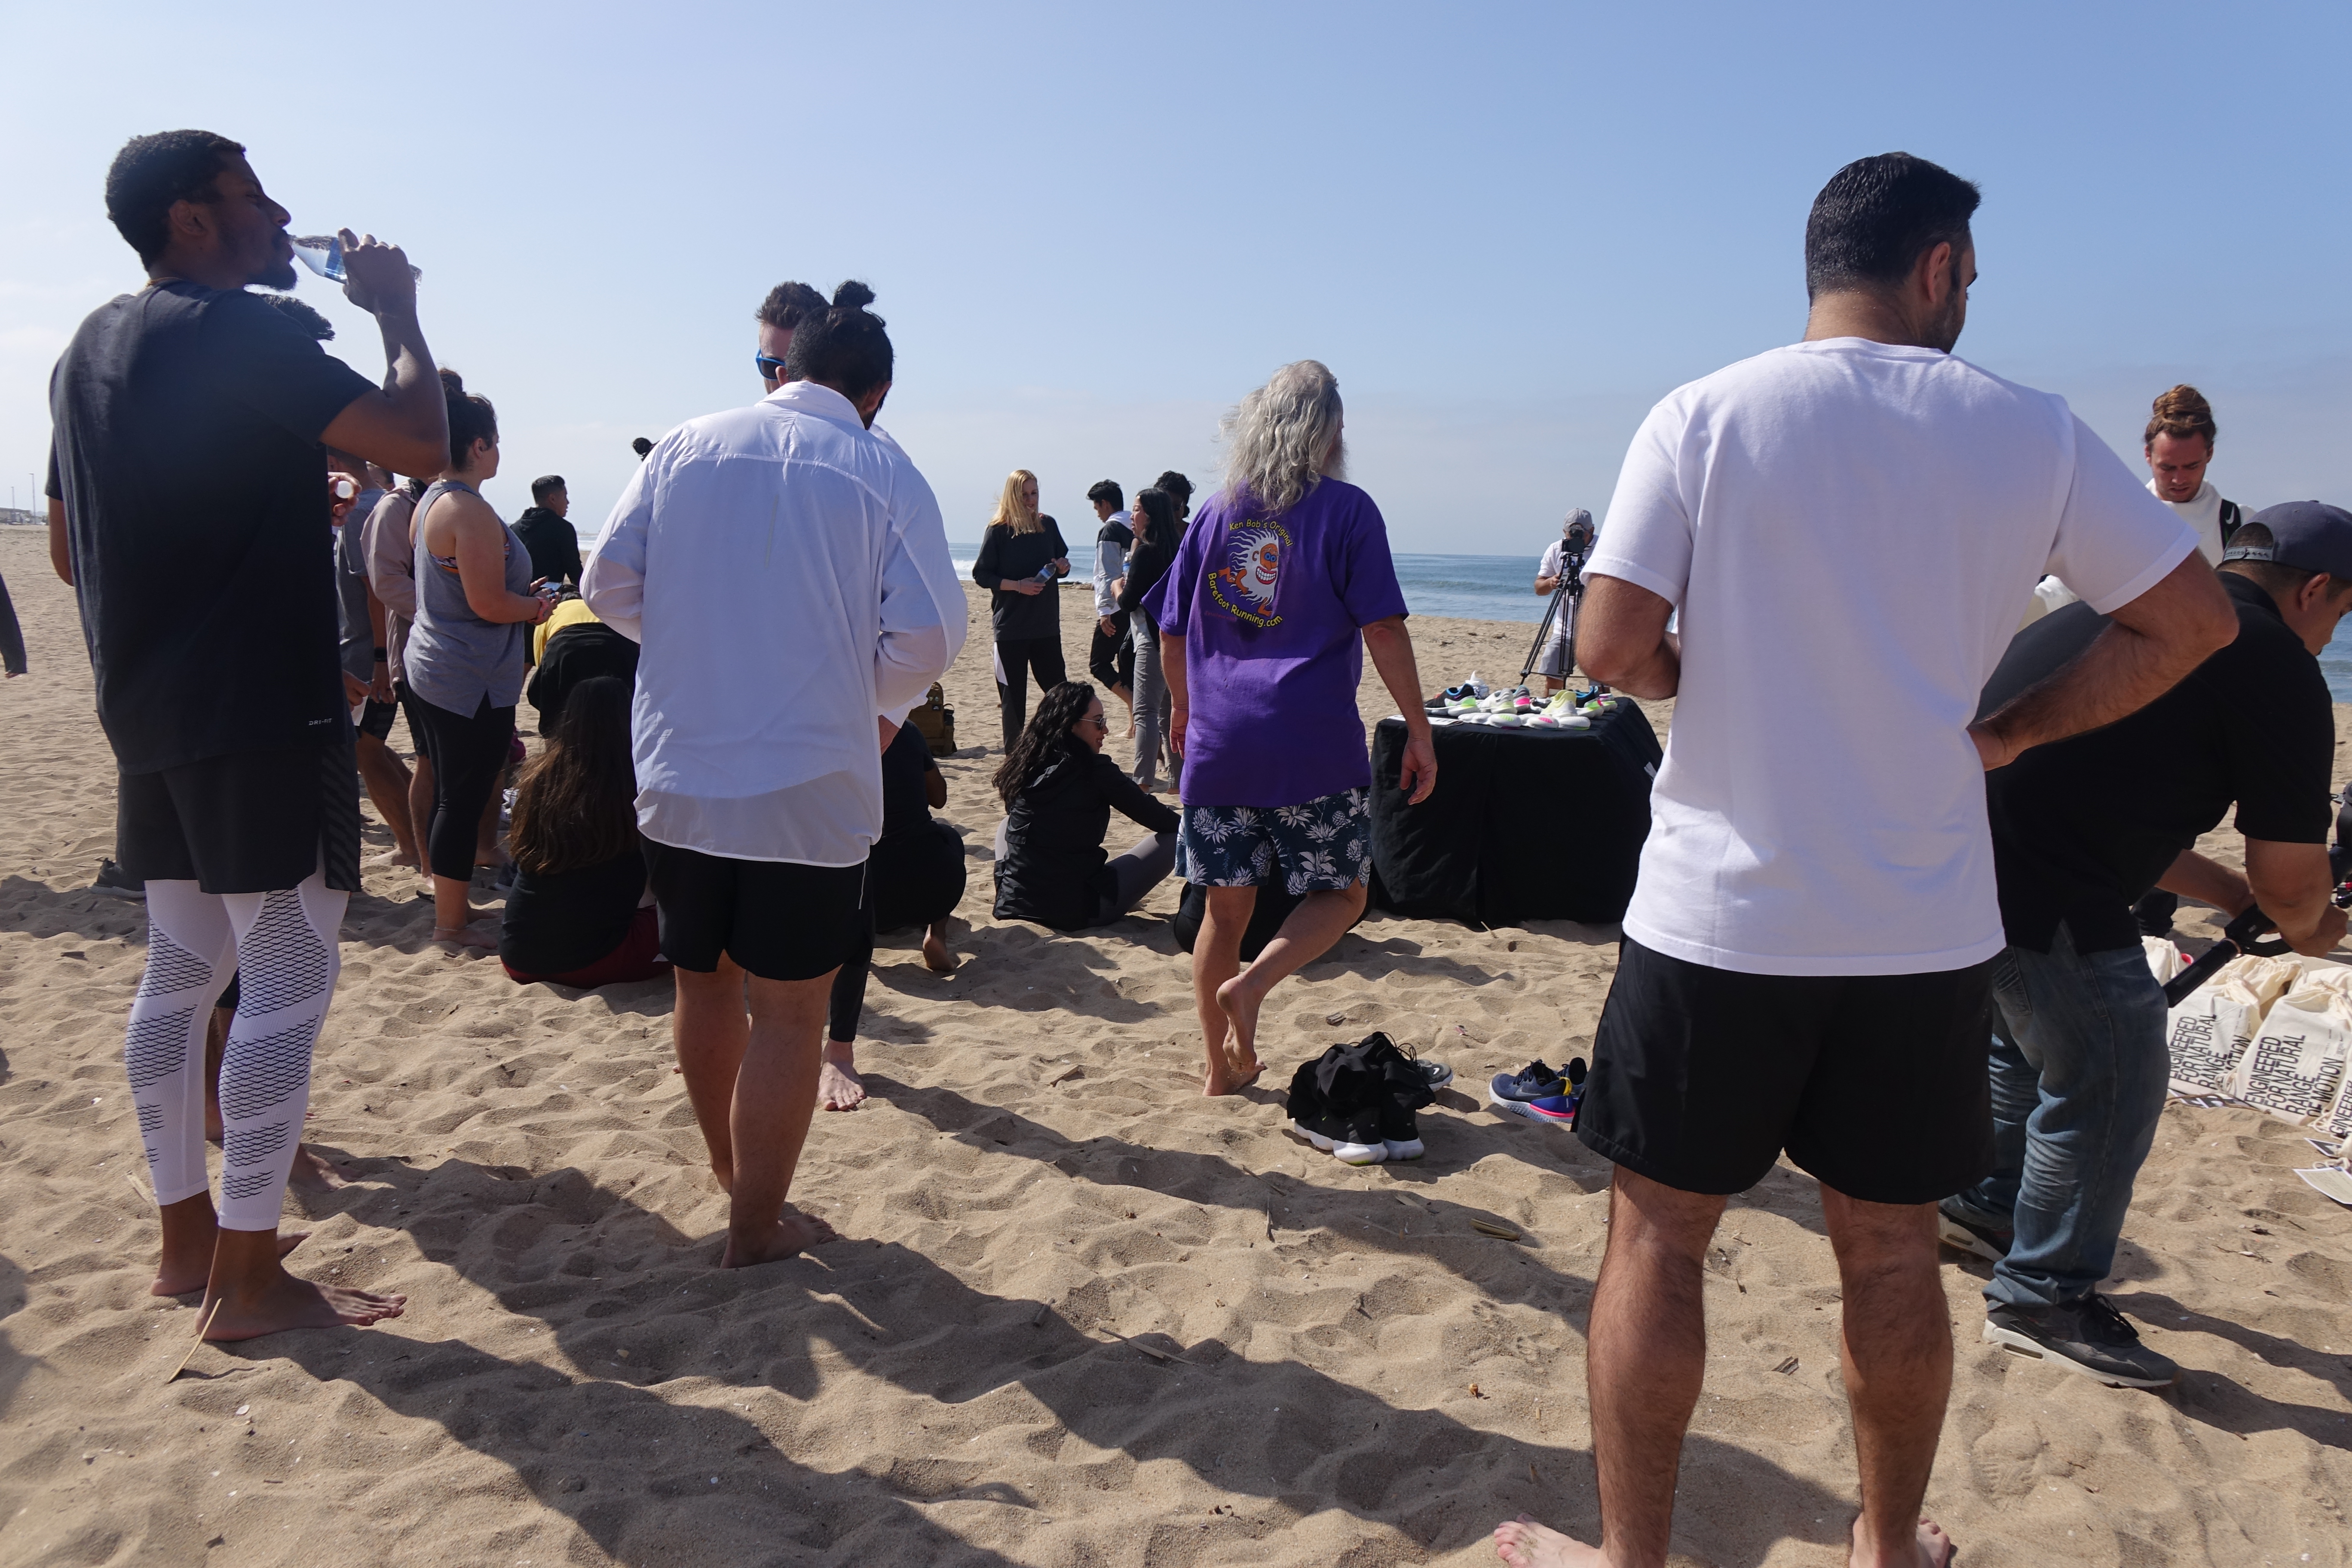 2019-05-03 Nike Free Barefoot Running Event, Huntington Beach, California